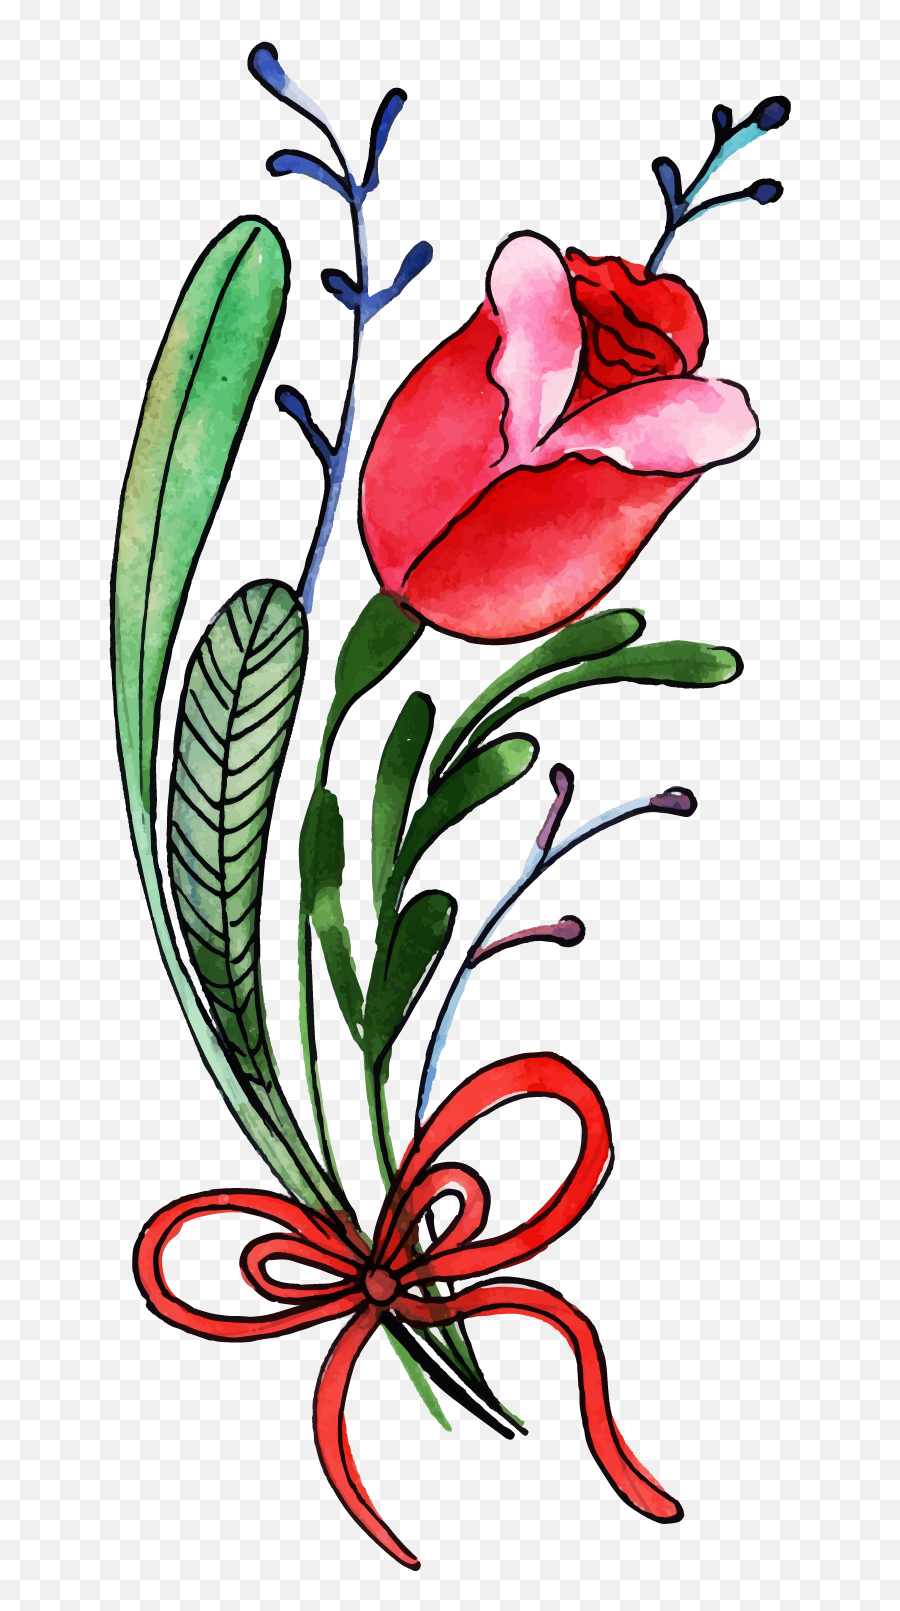 Free Png Watercolor Valentine Floral - Konfest,Flower Stem Png